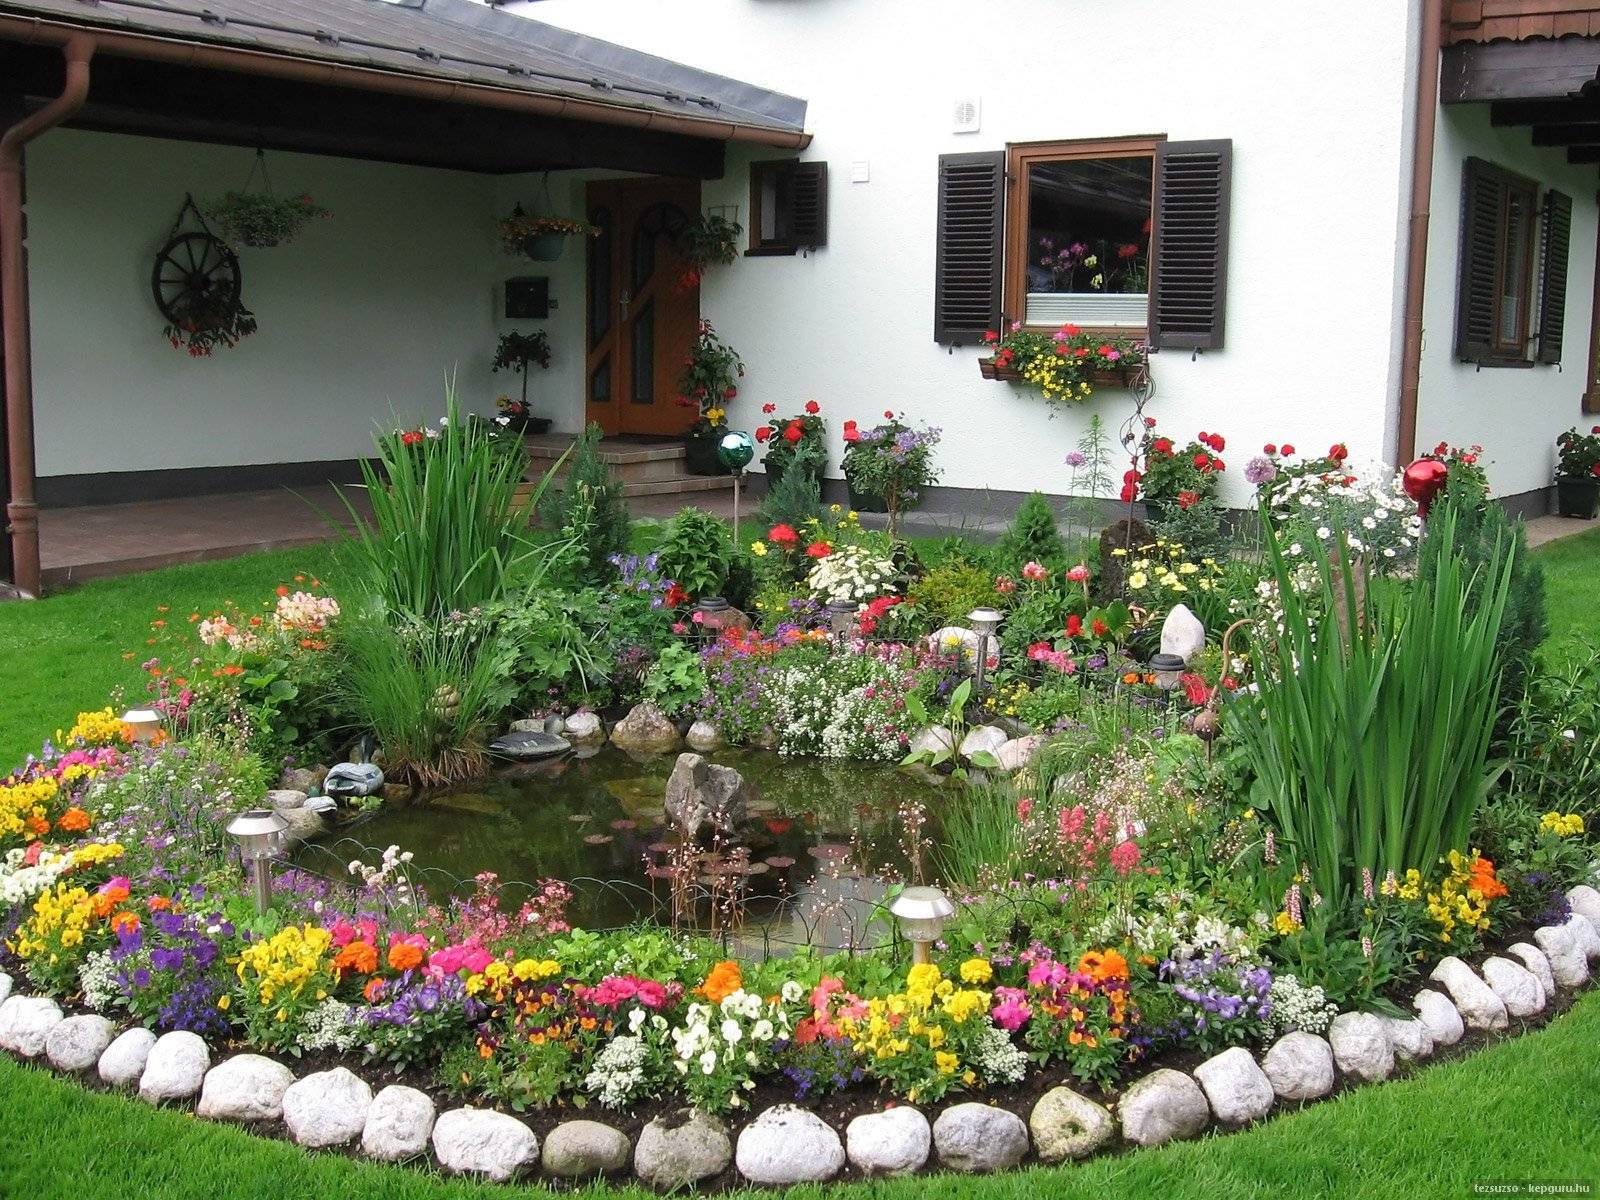 Ландшафтный дизайн перед домом: планирование и оформление участка, цветник и декоративные элементы